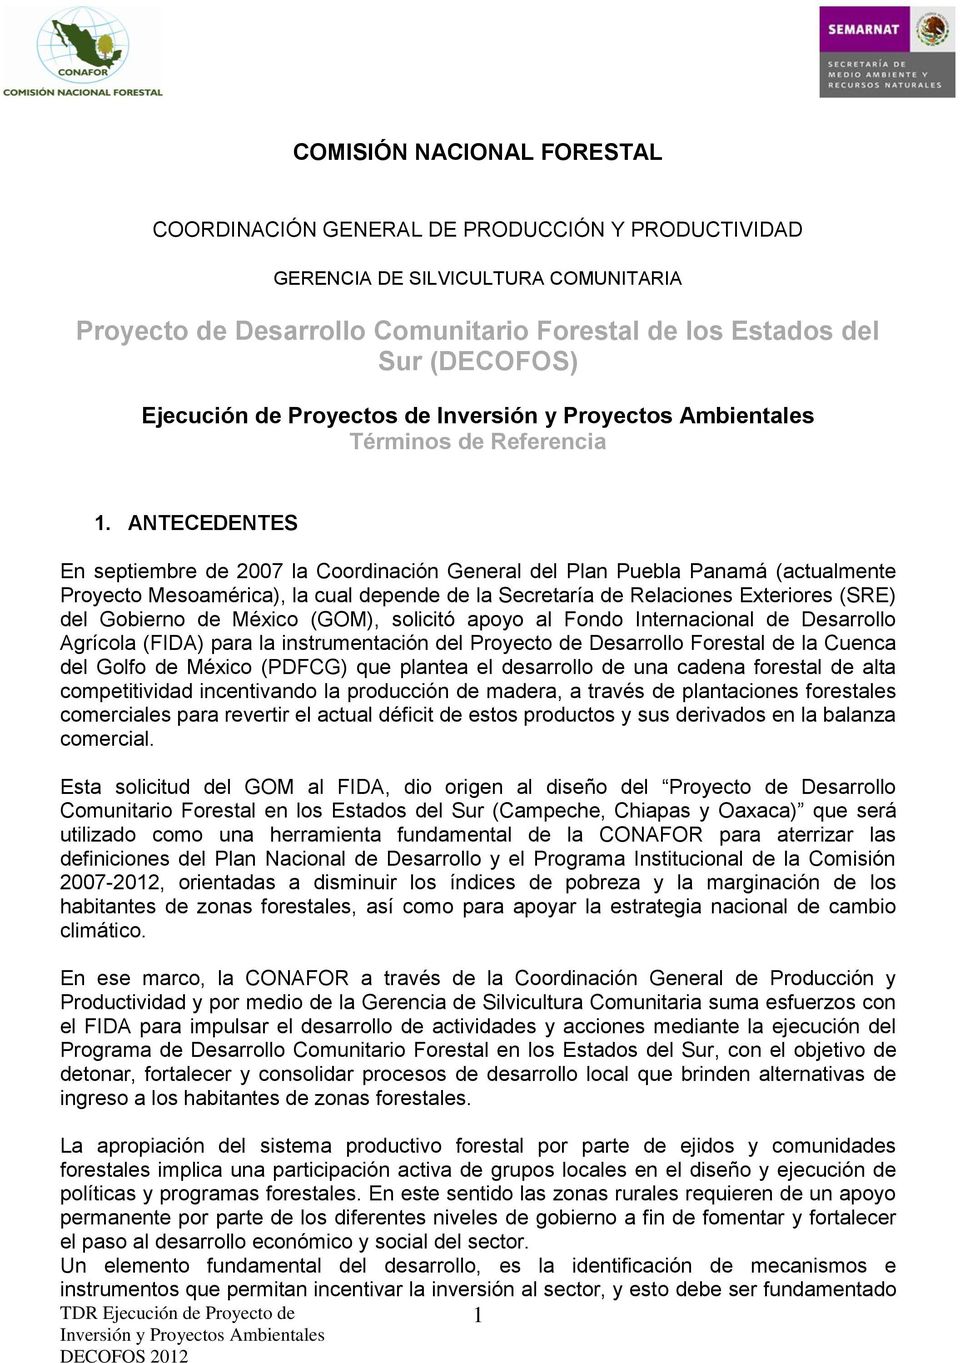 ANTECEDENTES En septiembre de 2007 la Coordinación General del Plan Puebla Panamá (actualmente Proyecto Mesoamérica), la cual depende de la Secretaría de Relaciones Exteriores (SRE) del Gobierno de